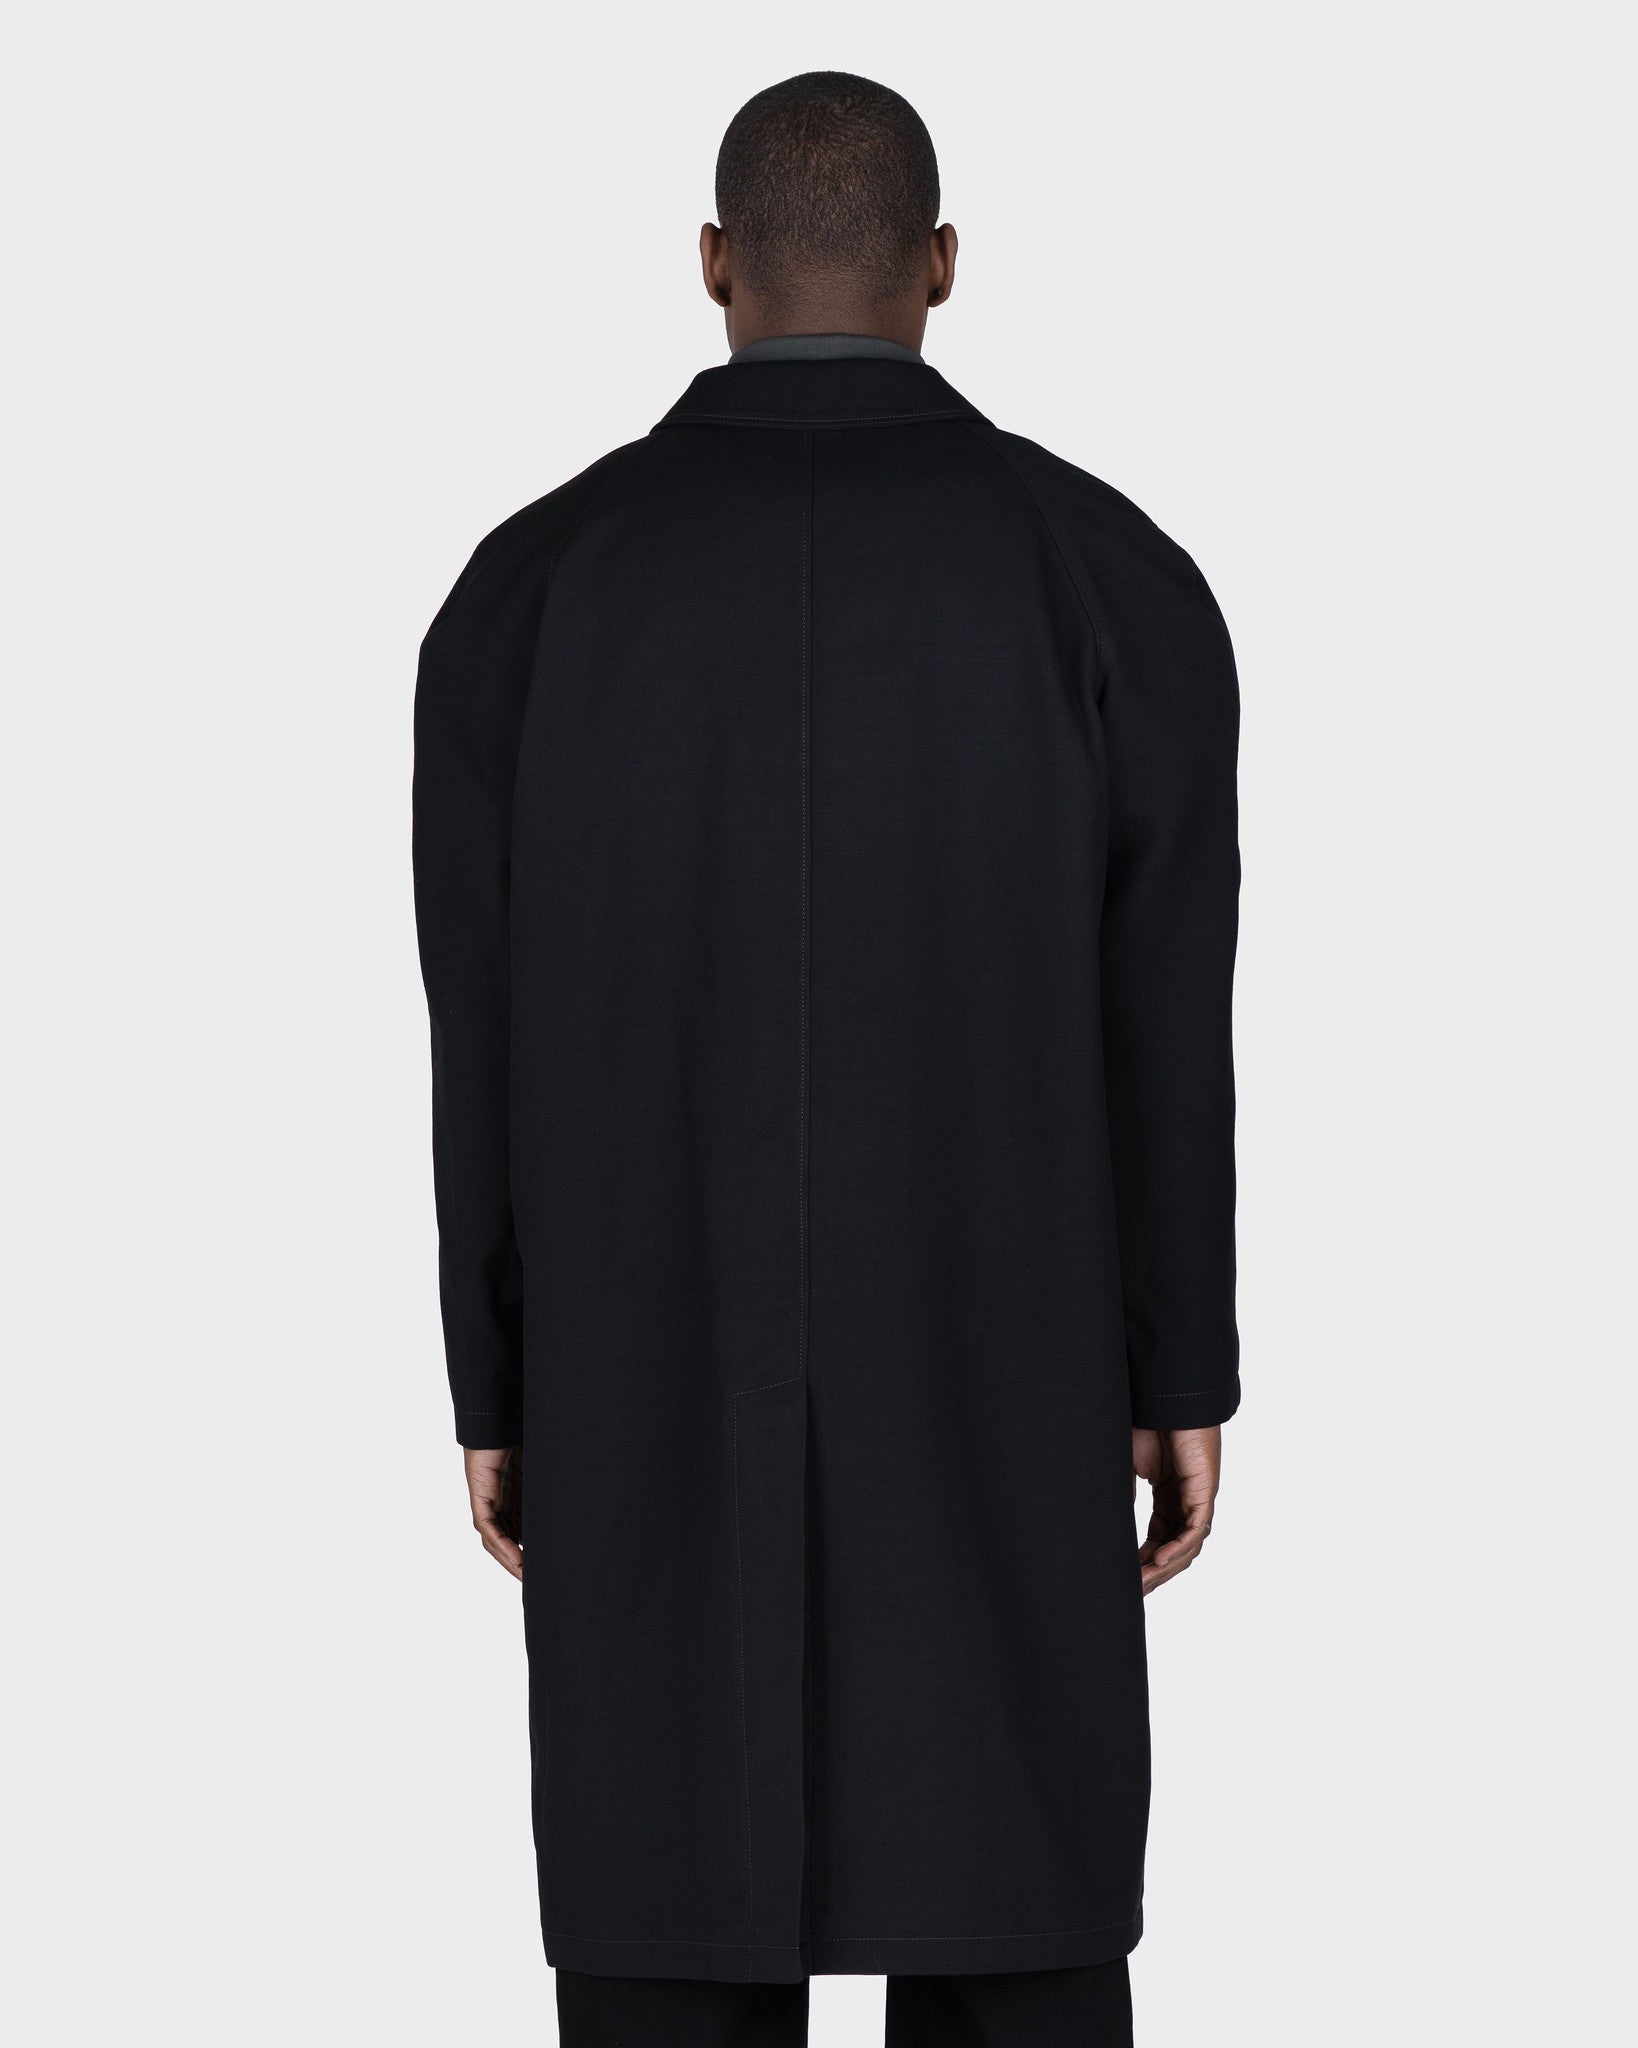 Crombie Coat in Black